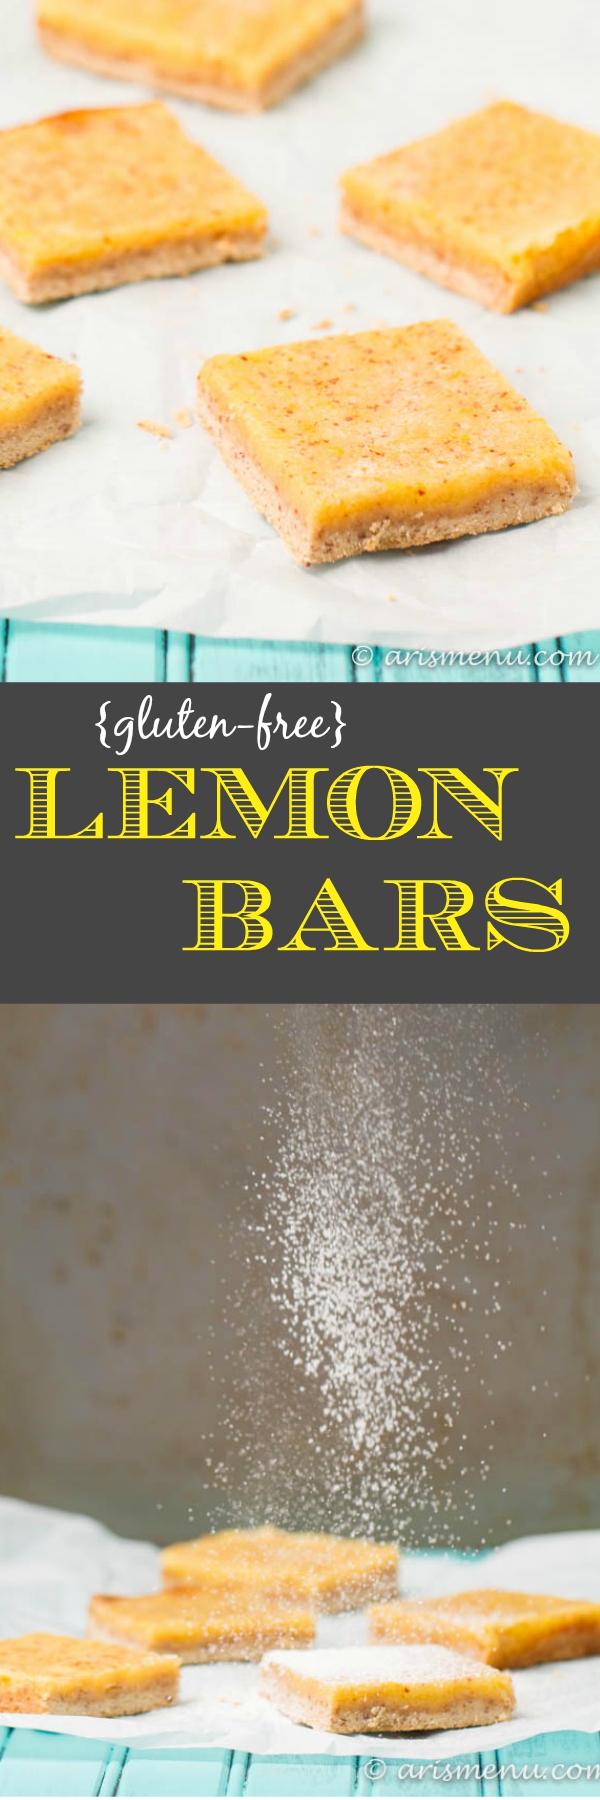 Gluten-free Lemon Bars